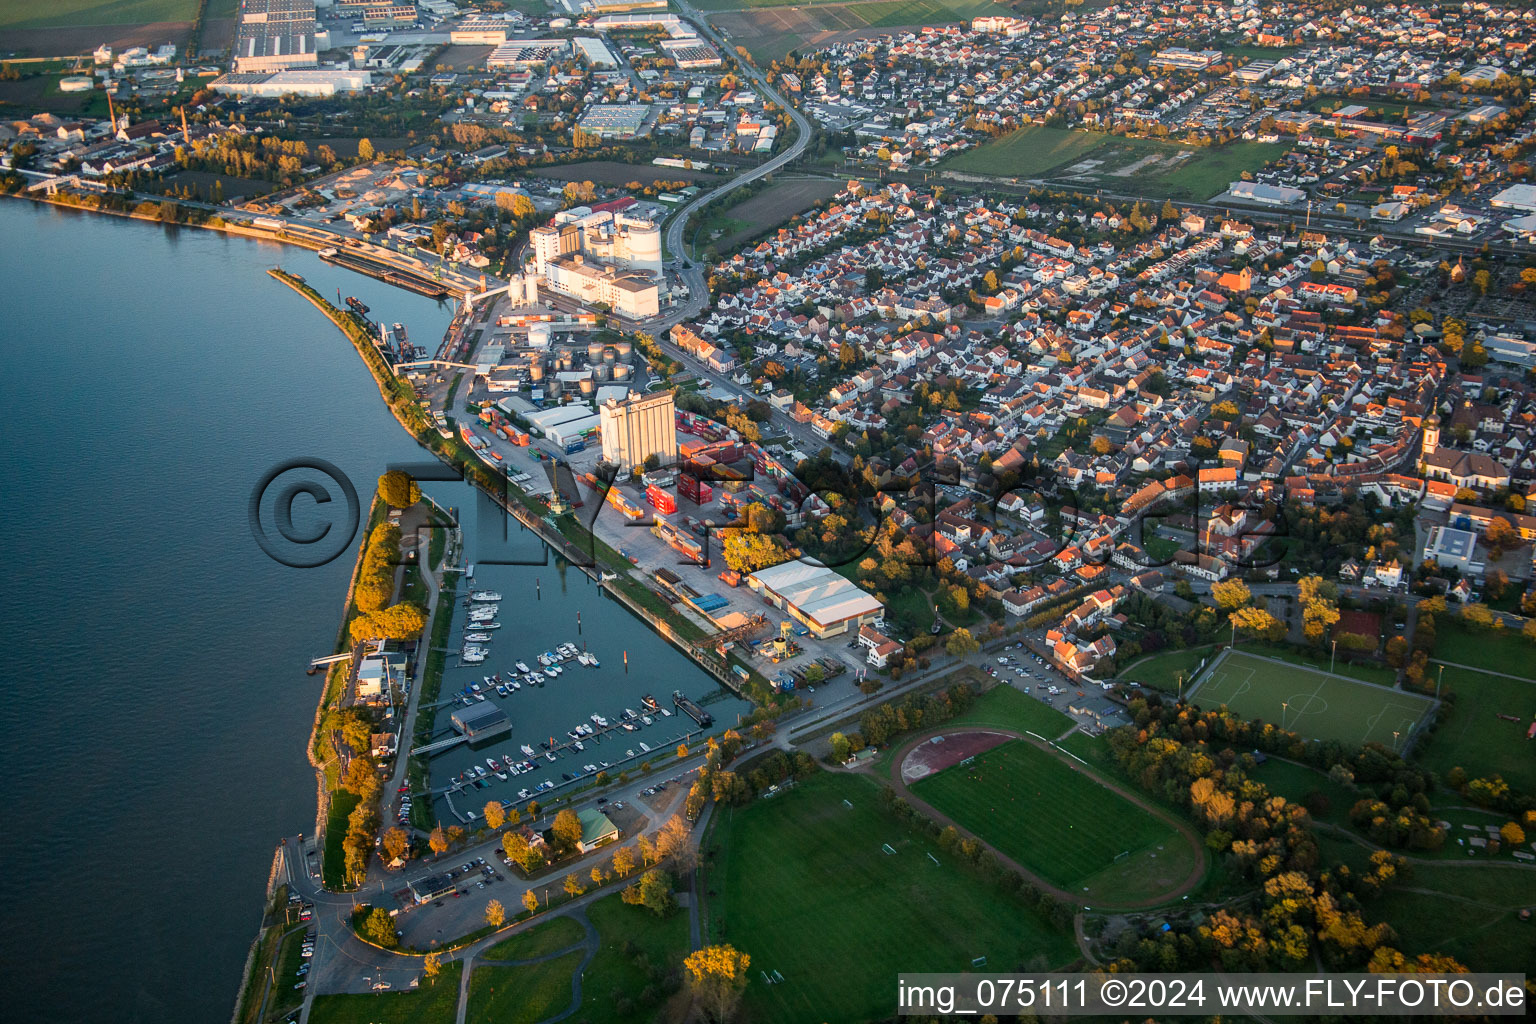 Luftbild von Stadtzentrum im Innenstadtbereich am Ufer des Flußverlaufes des Rhein in Gernsheim im Bundesland Hessen, Deutschland